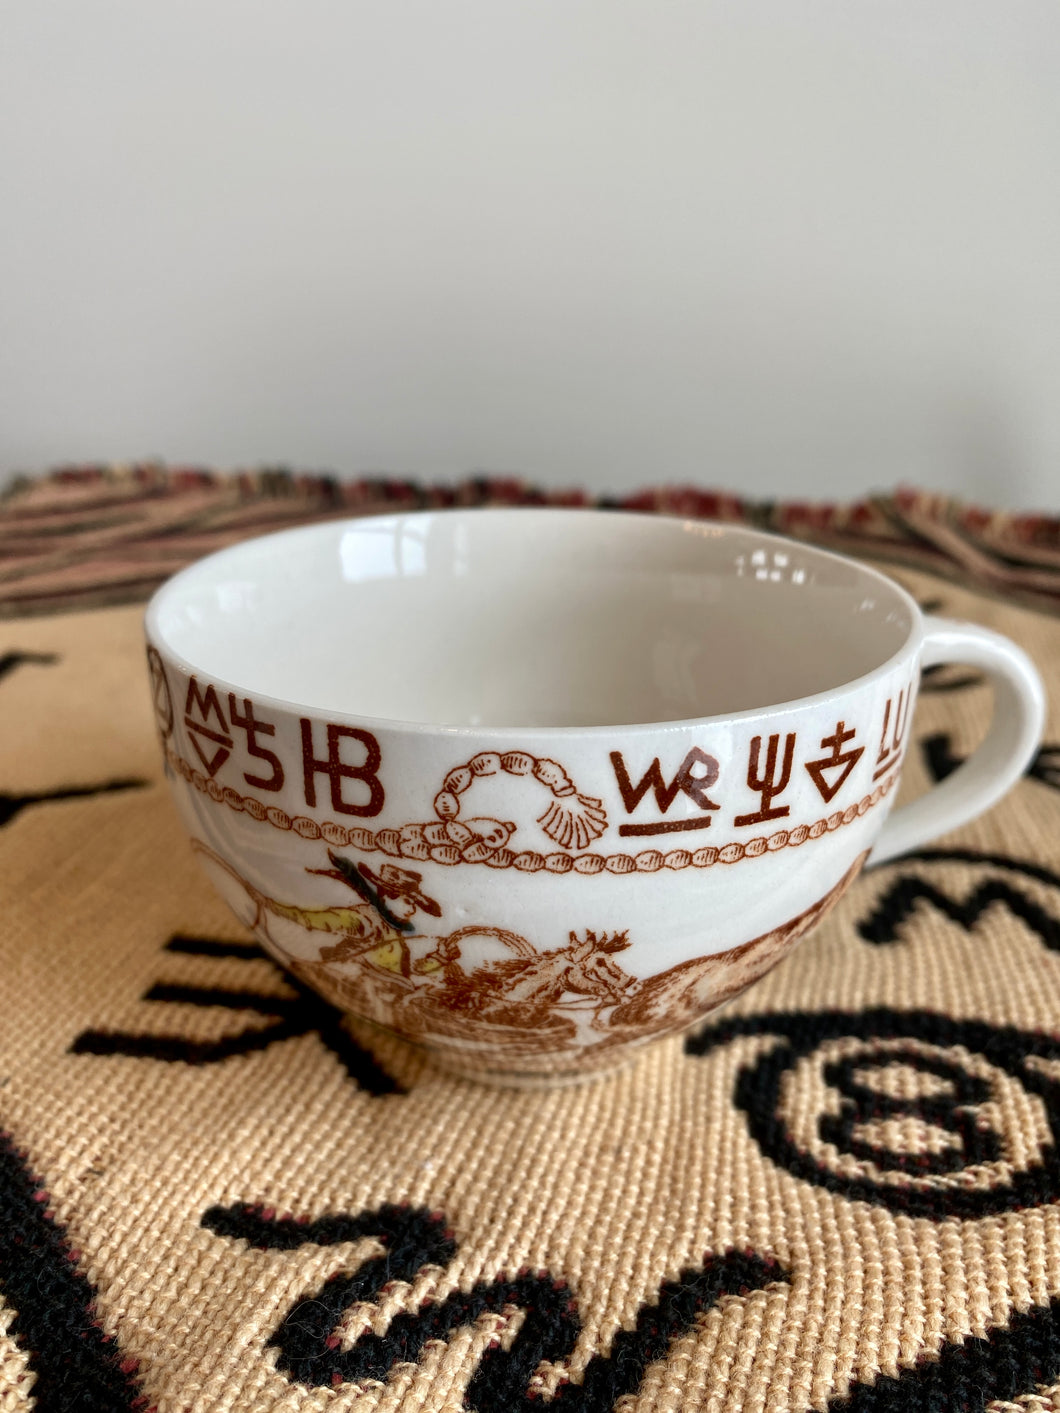 Western Brands & Roper Tea Cup